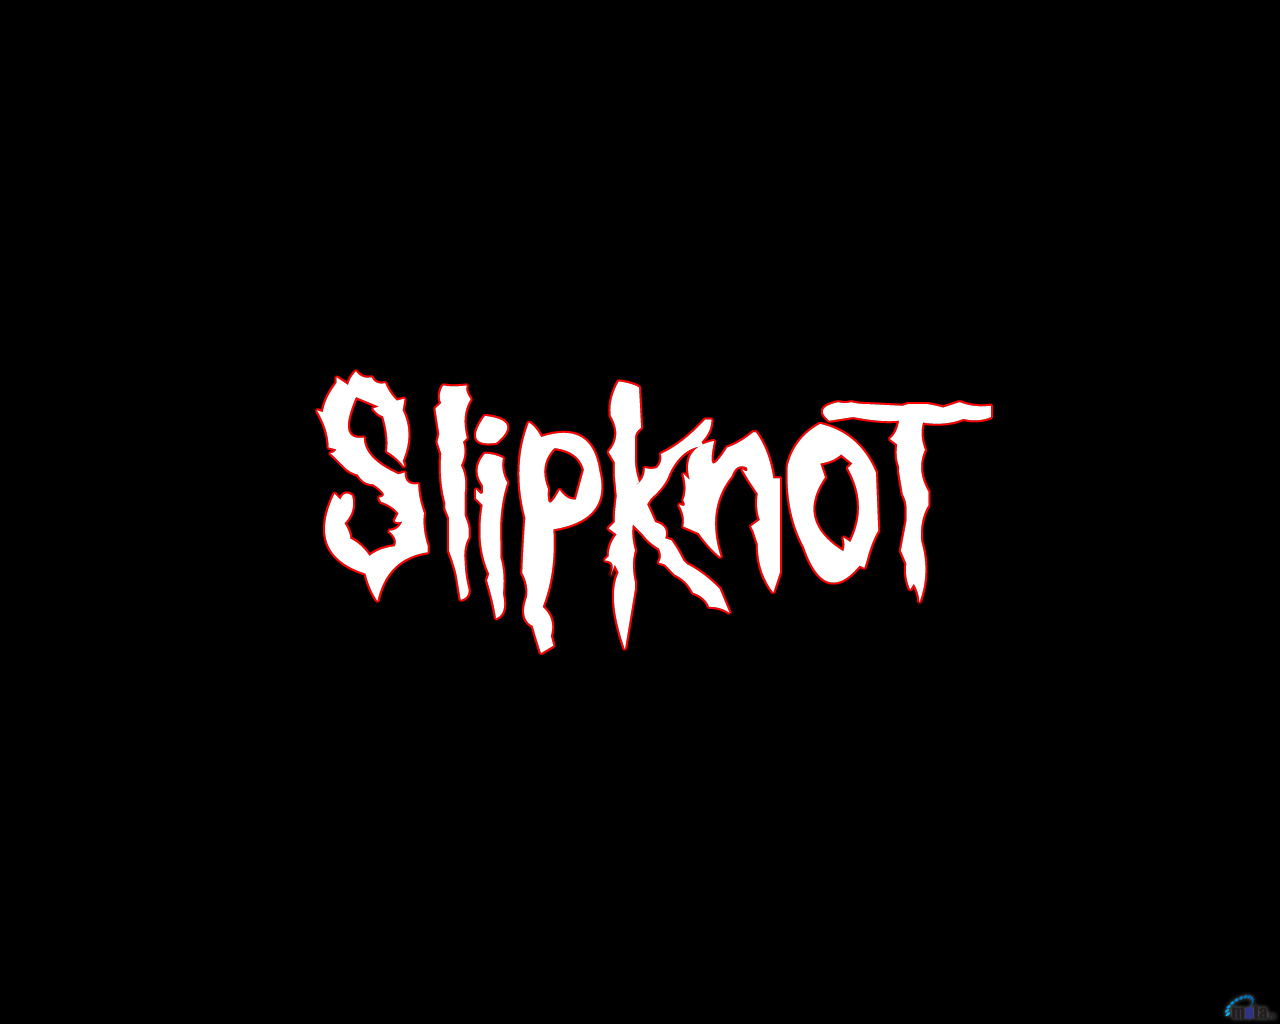 Логотип группы Slipknot